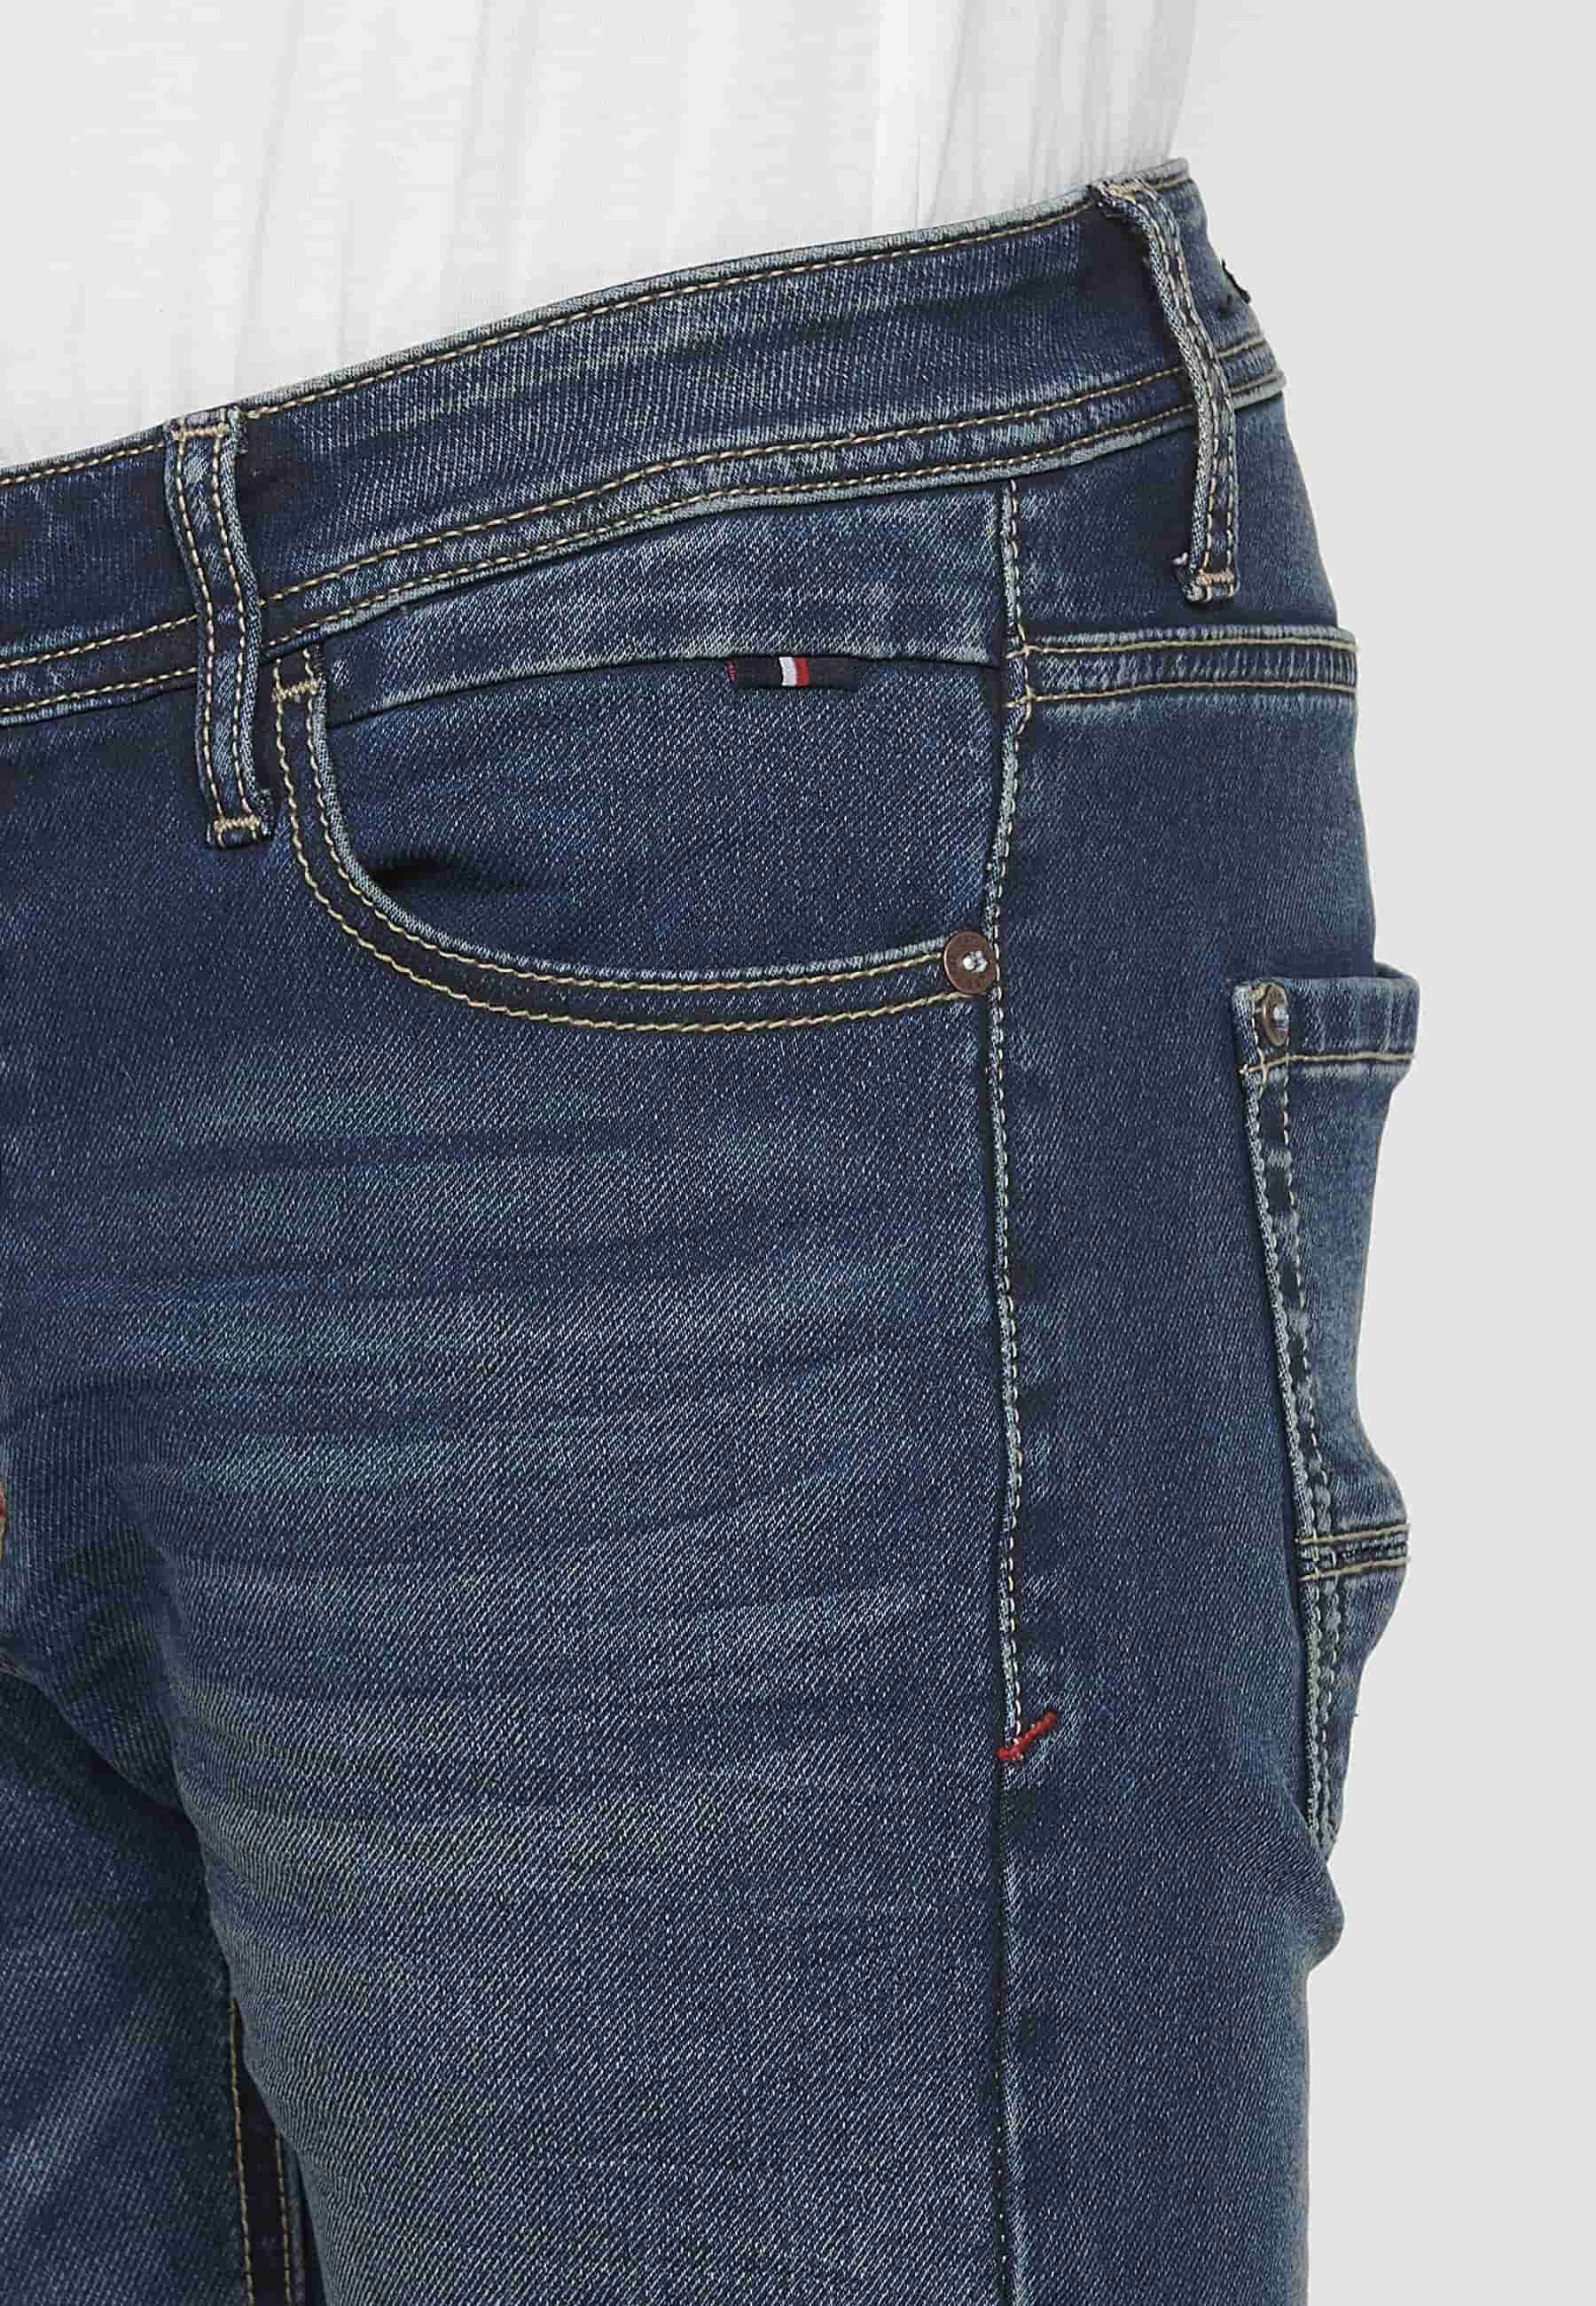 Jean long coupe slim avec fermeture éclair sur le devant et fermeture boutonnée avec cinq poches, une poche bleue pour homme 9